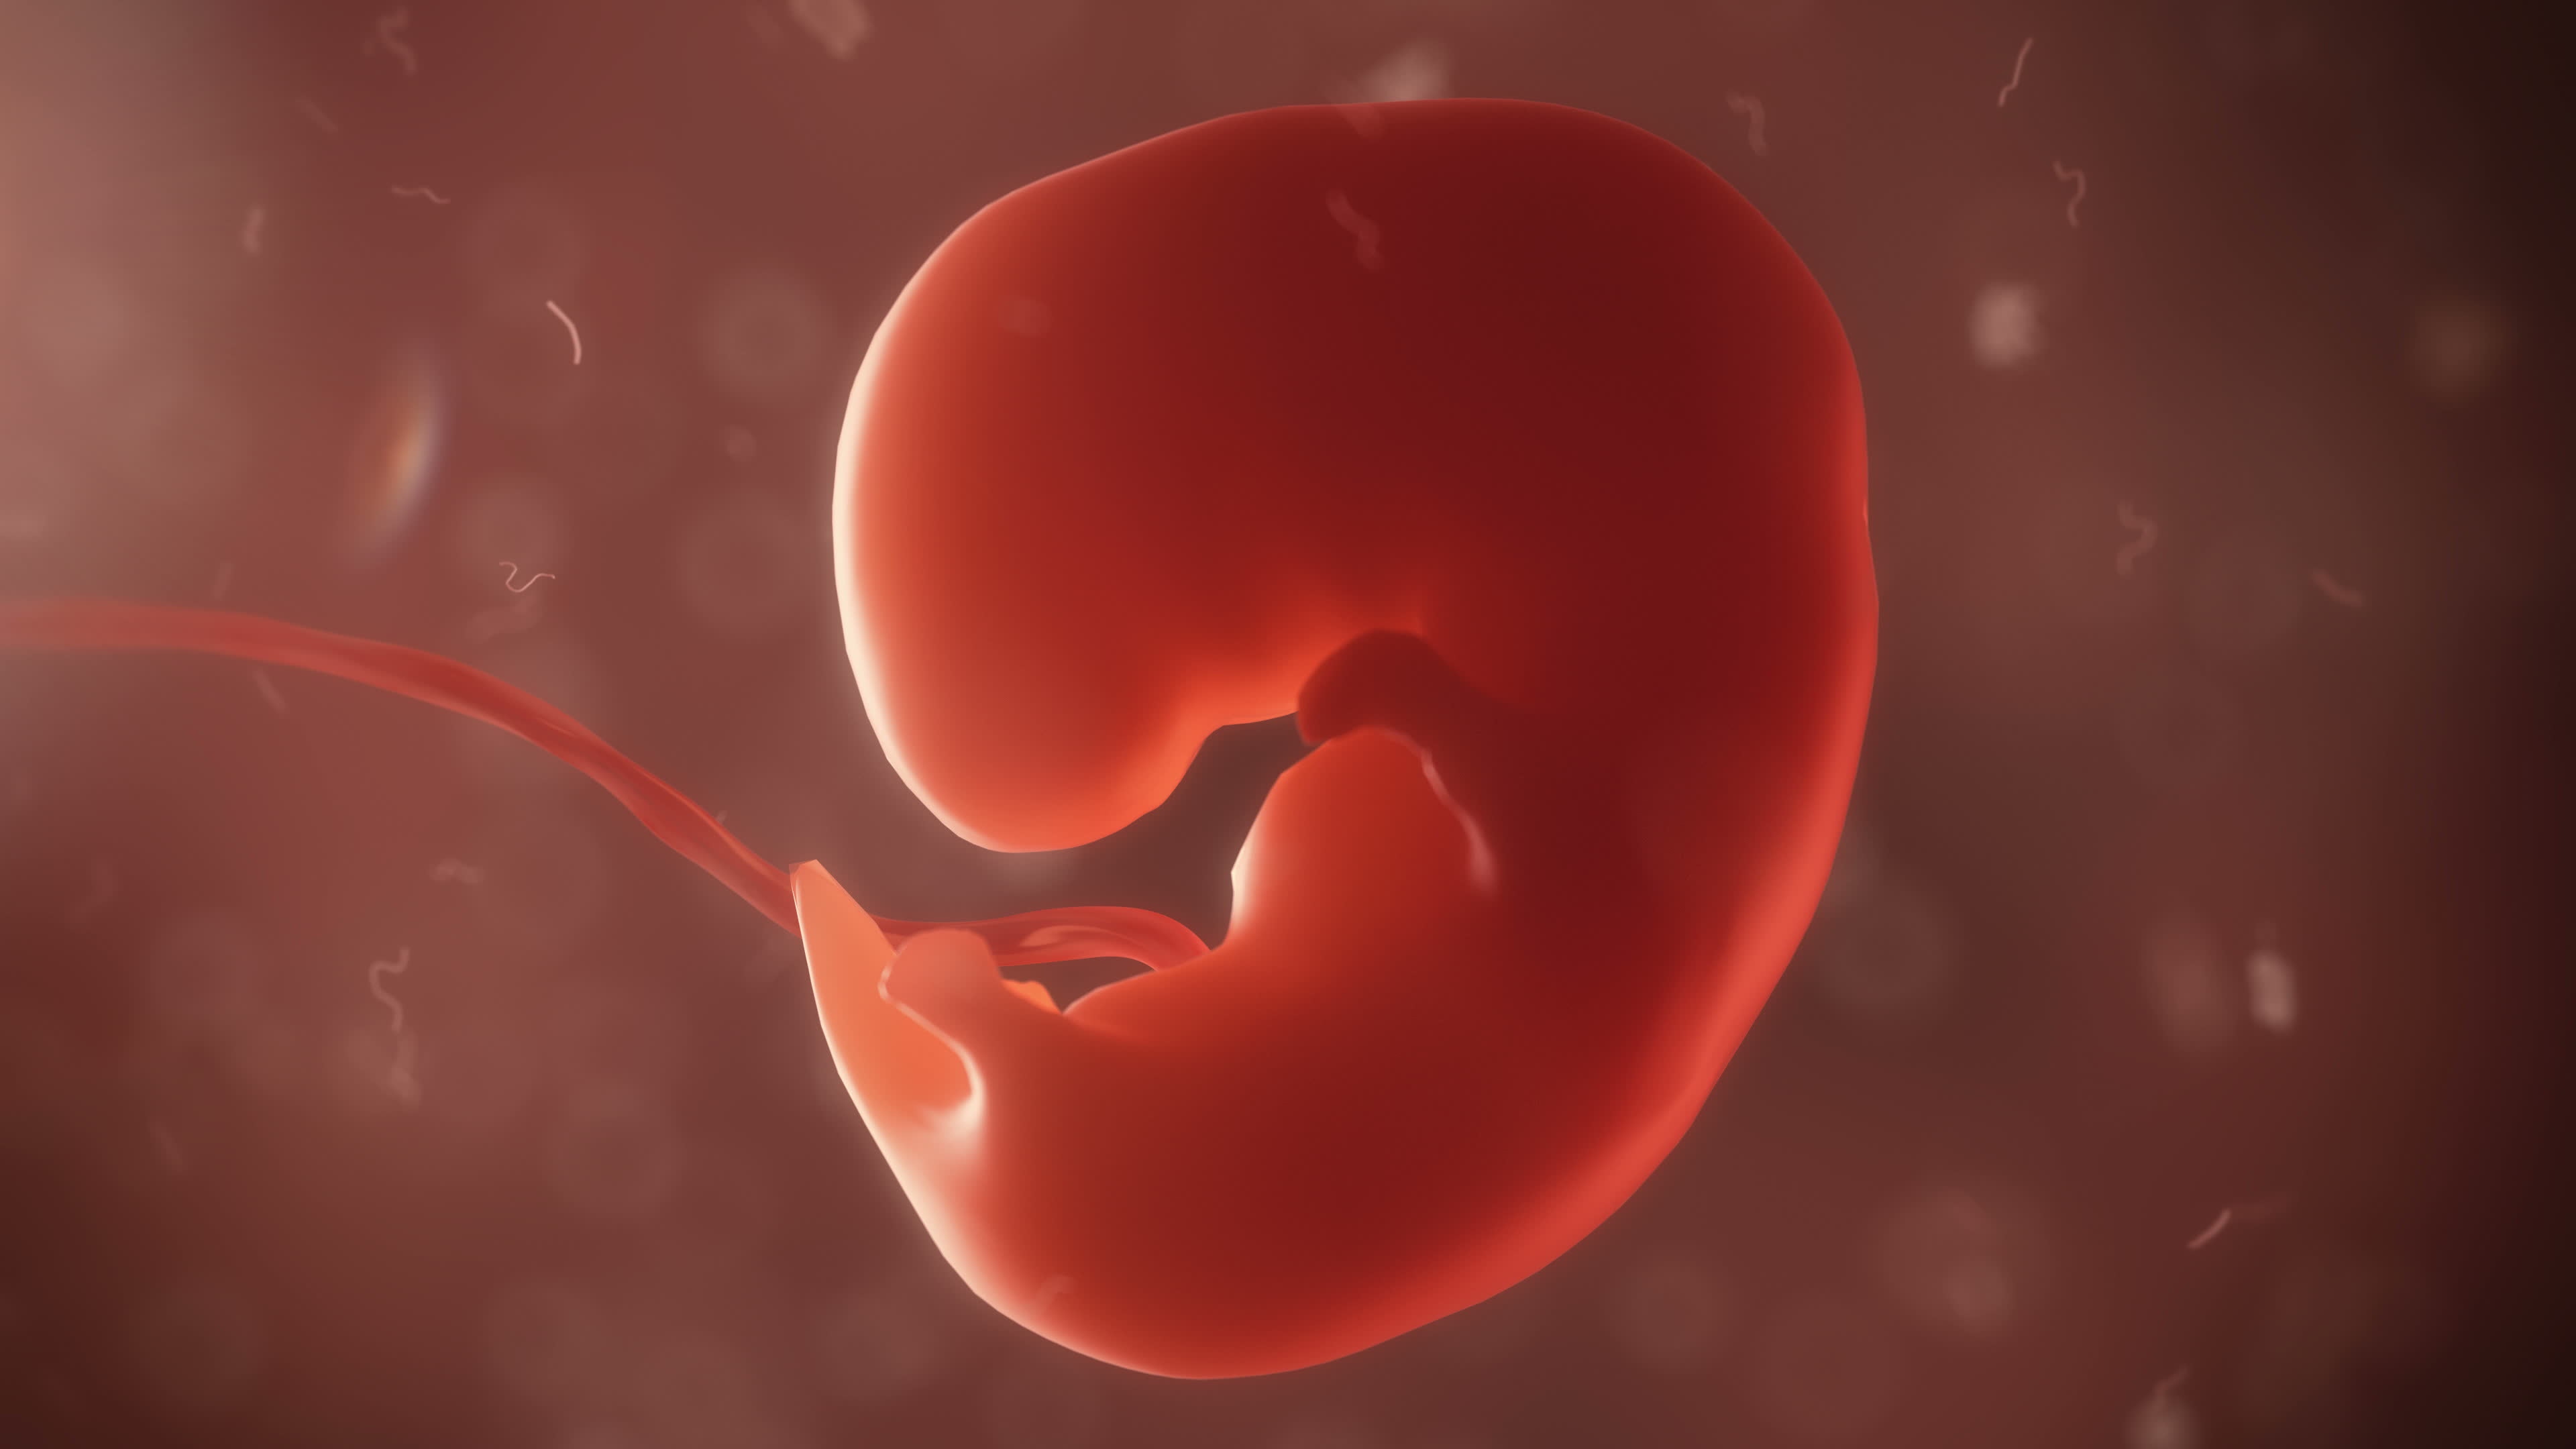 พัฒนาการทารกในครรภ์ สัปดาห์ที่ 5 – 8 พัฒนาการเบื้องต้น ขนาดเท่าเมล็ดถั่วแดง